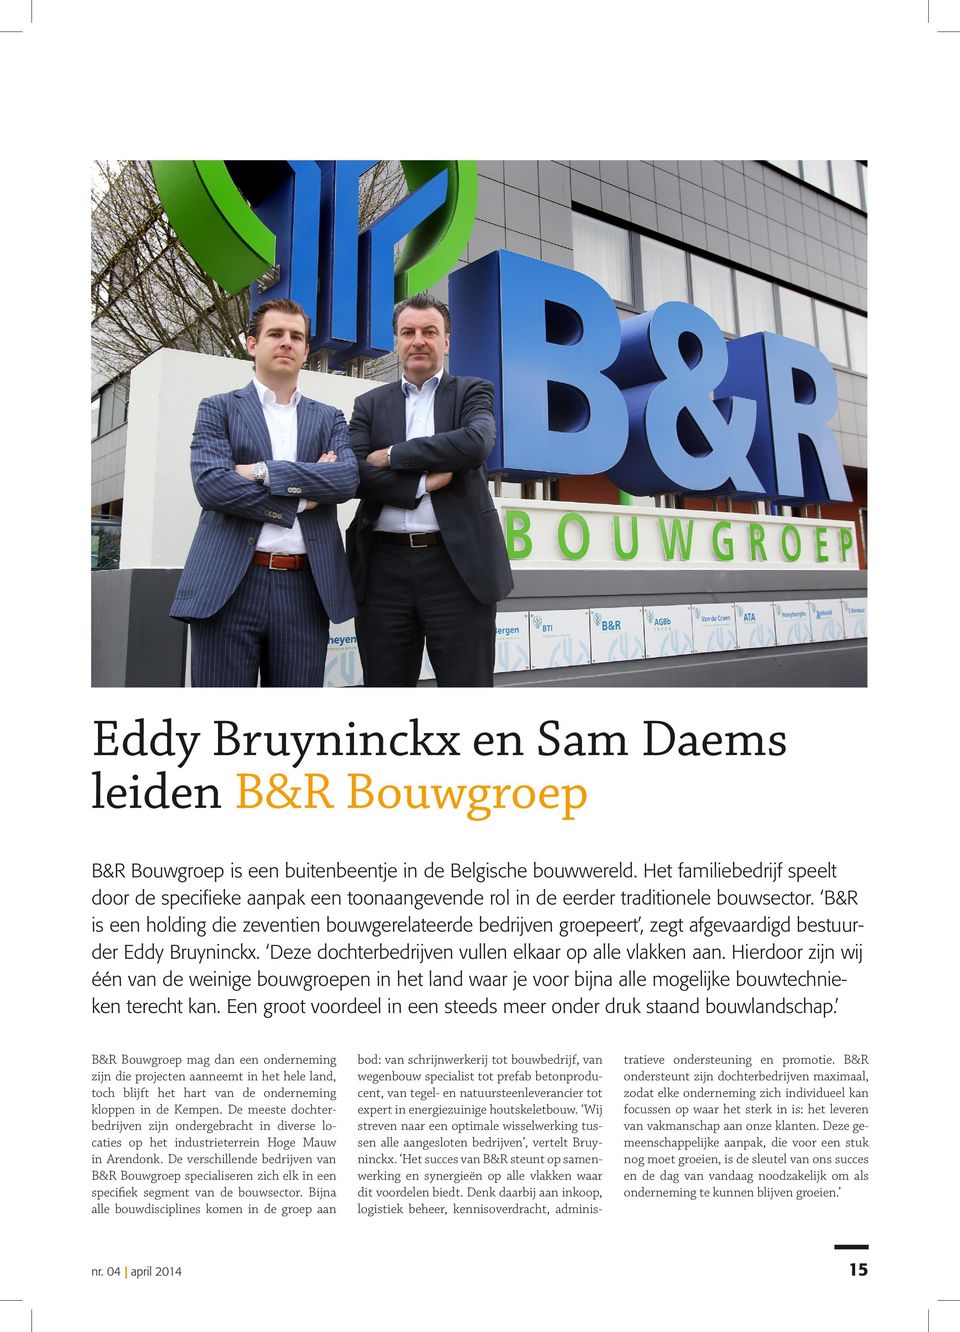 B&R is een holding die zeventien bouwgerelateerde bedrijven groepeert, zegt afgevaardigd bestuurder Eddy Bruyninckx. Deze dochterbedrijven vullen elkaar op alle vlakken aan.